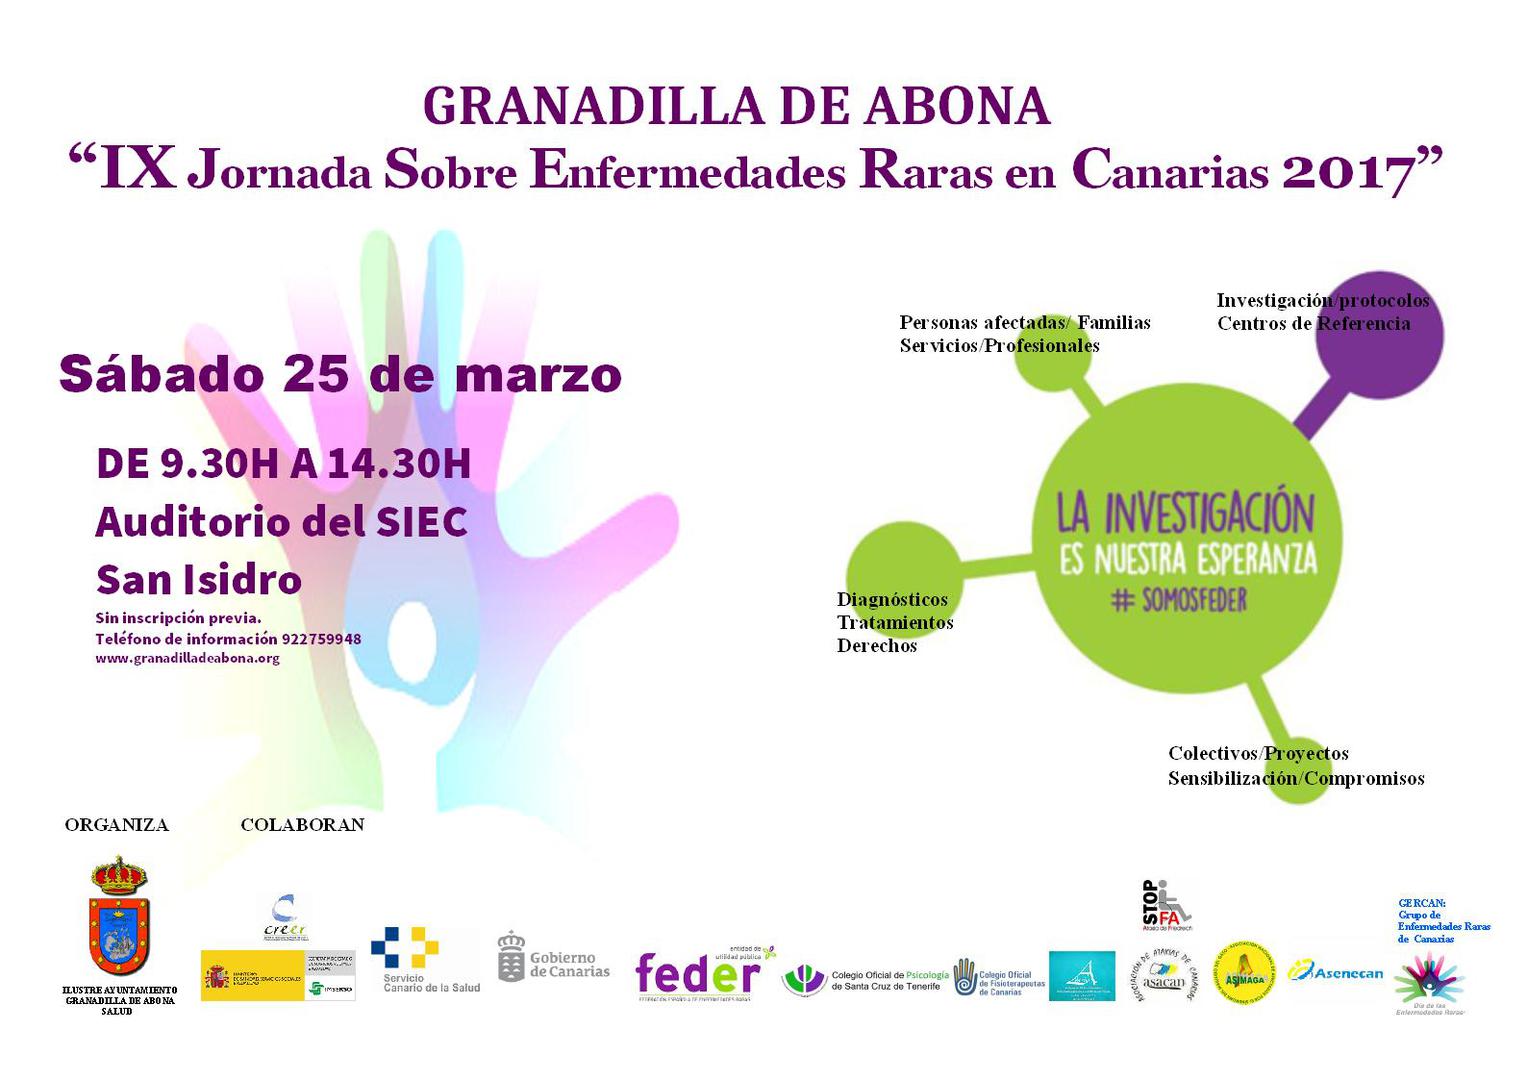 La ‘IX Jornada sobre Enfermedades Raras en Canarias’, este sábado en San Isidro